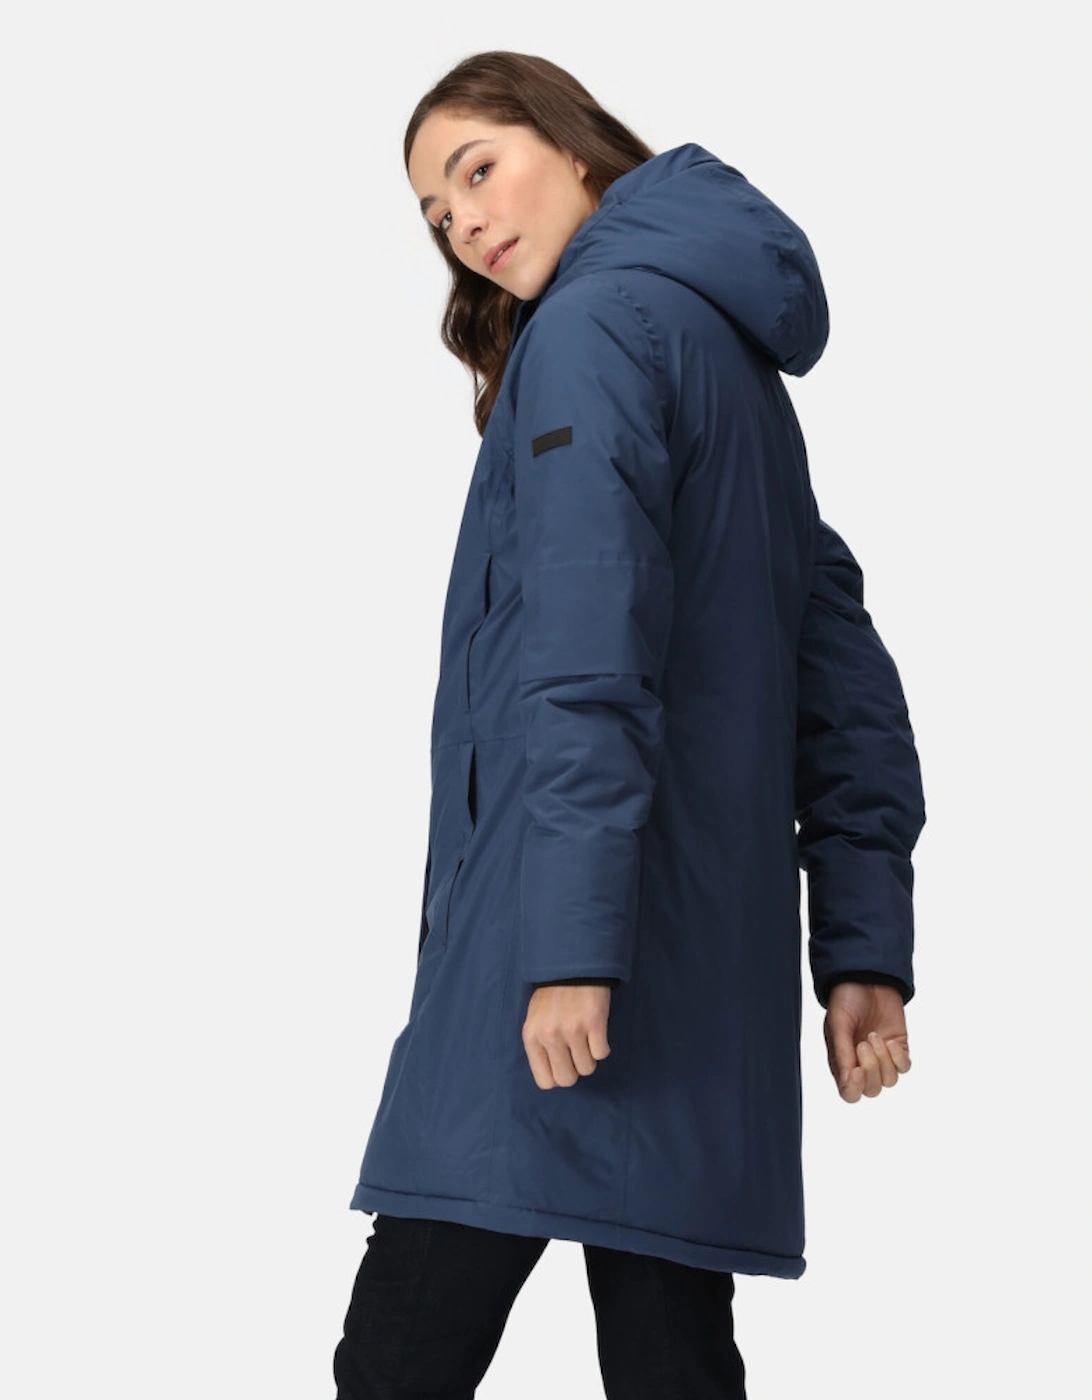 Womens Yewbank III Waterproof Insulated Jacket Coat